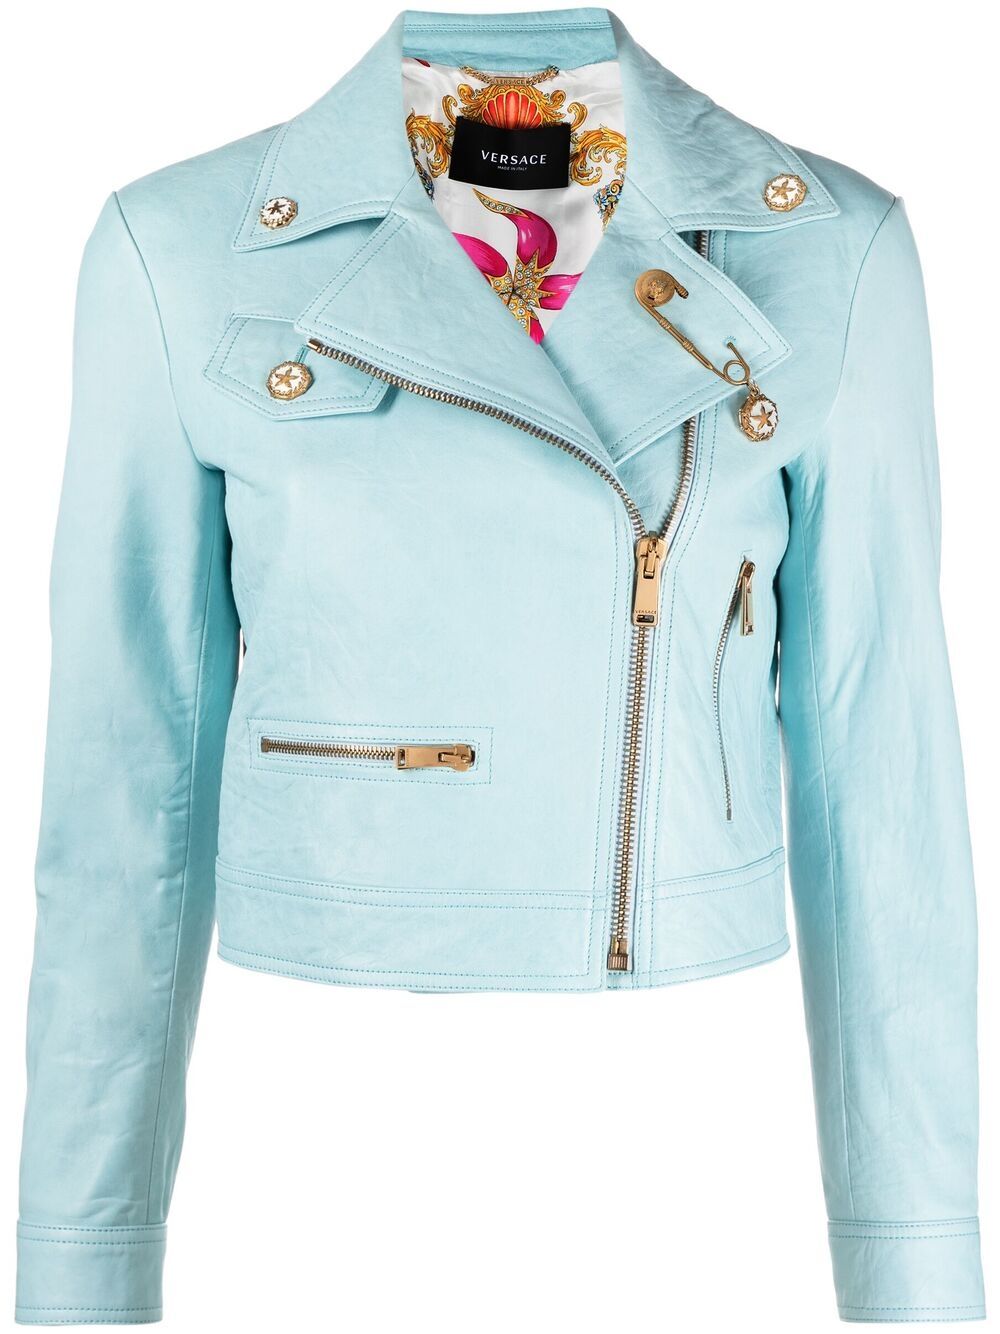 фото Versace куртка с декором safуty pin